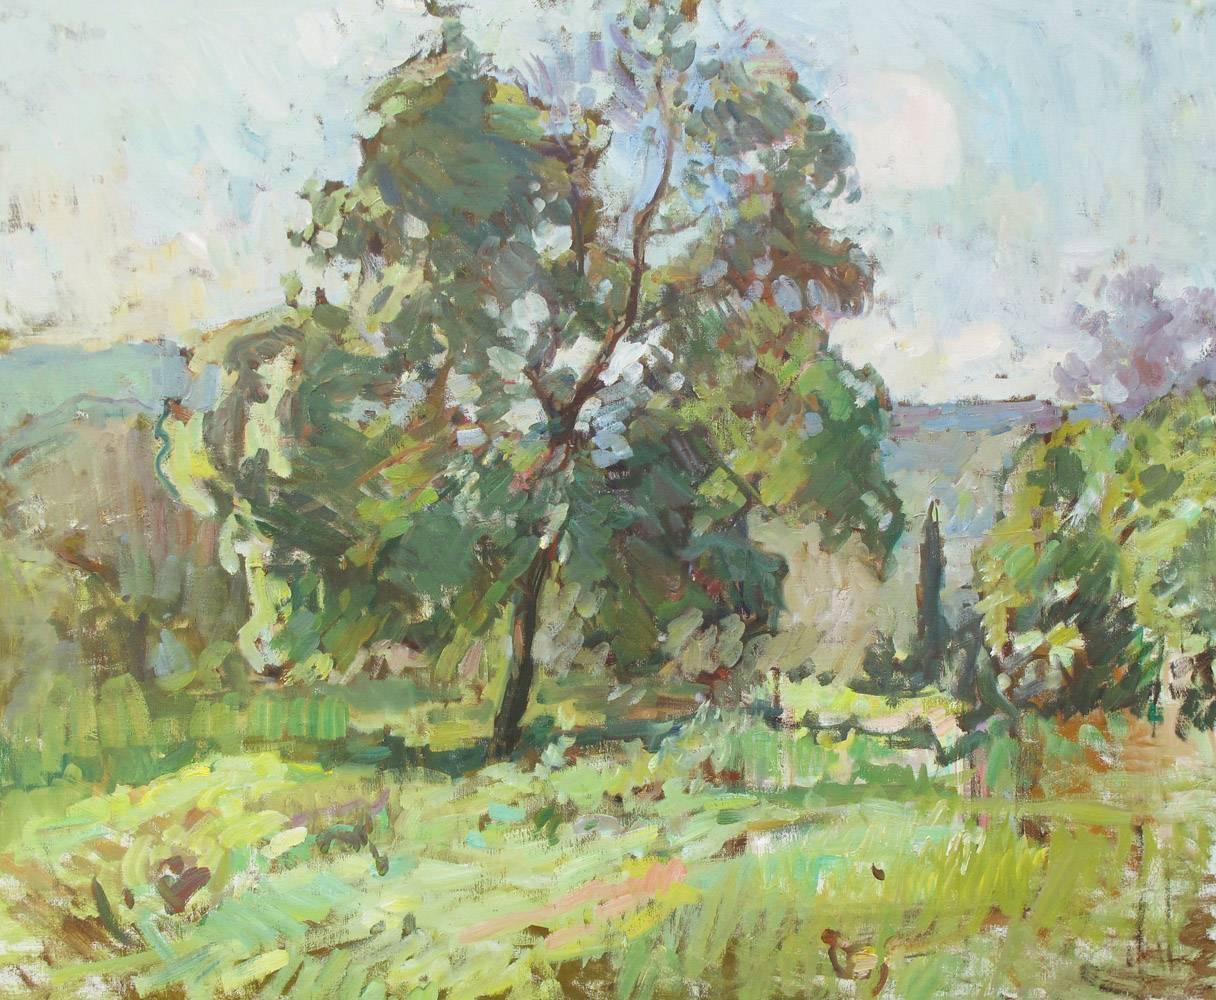 Landscape Painting Ben Fenske - L'arbre est en bois massif